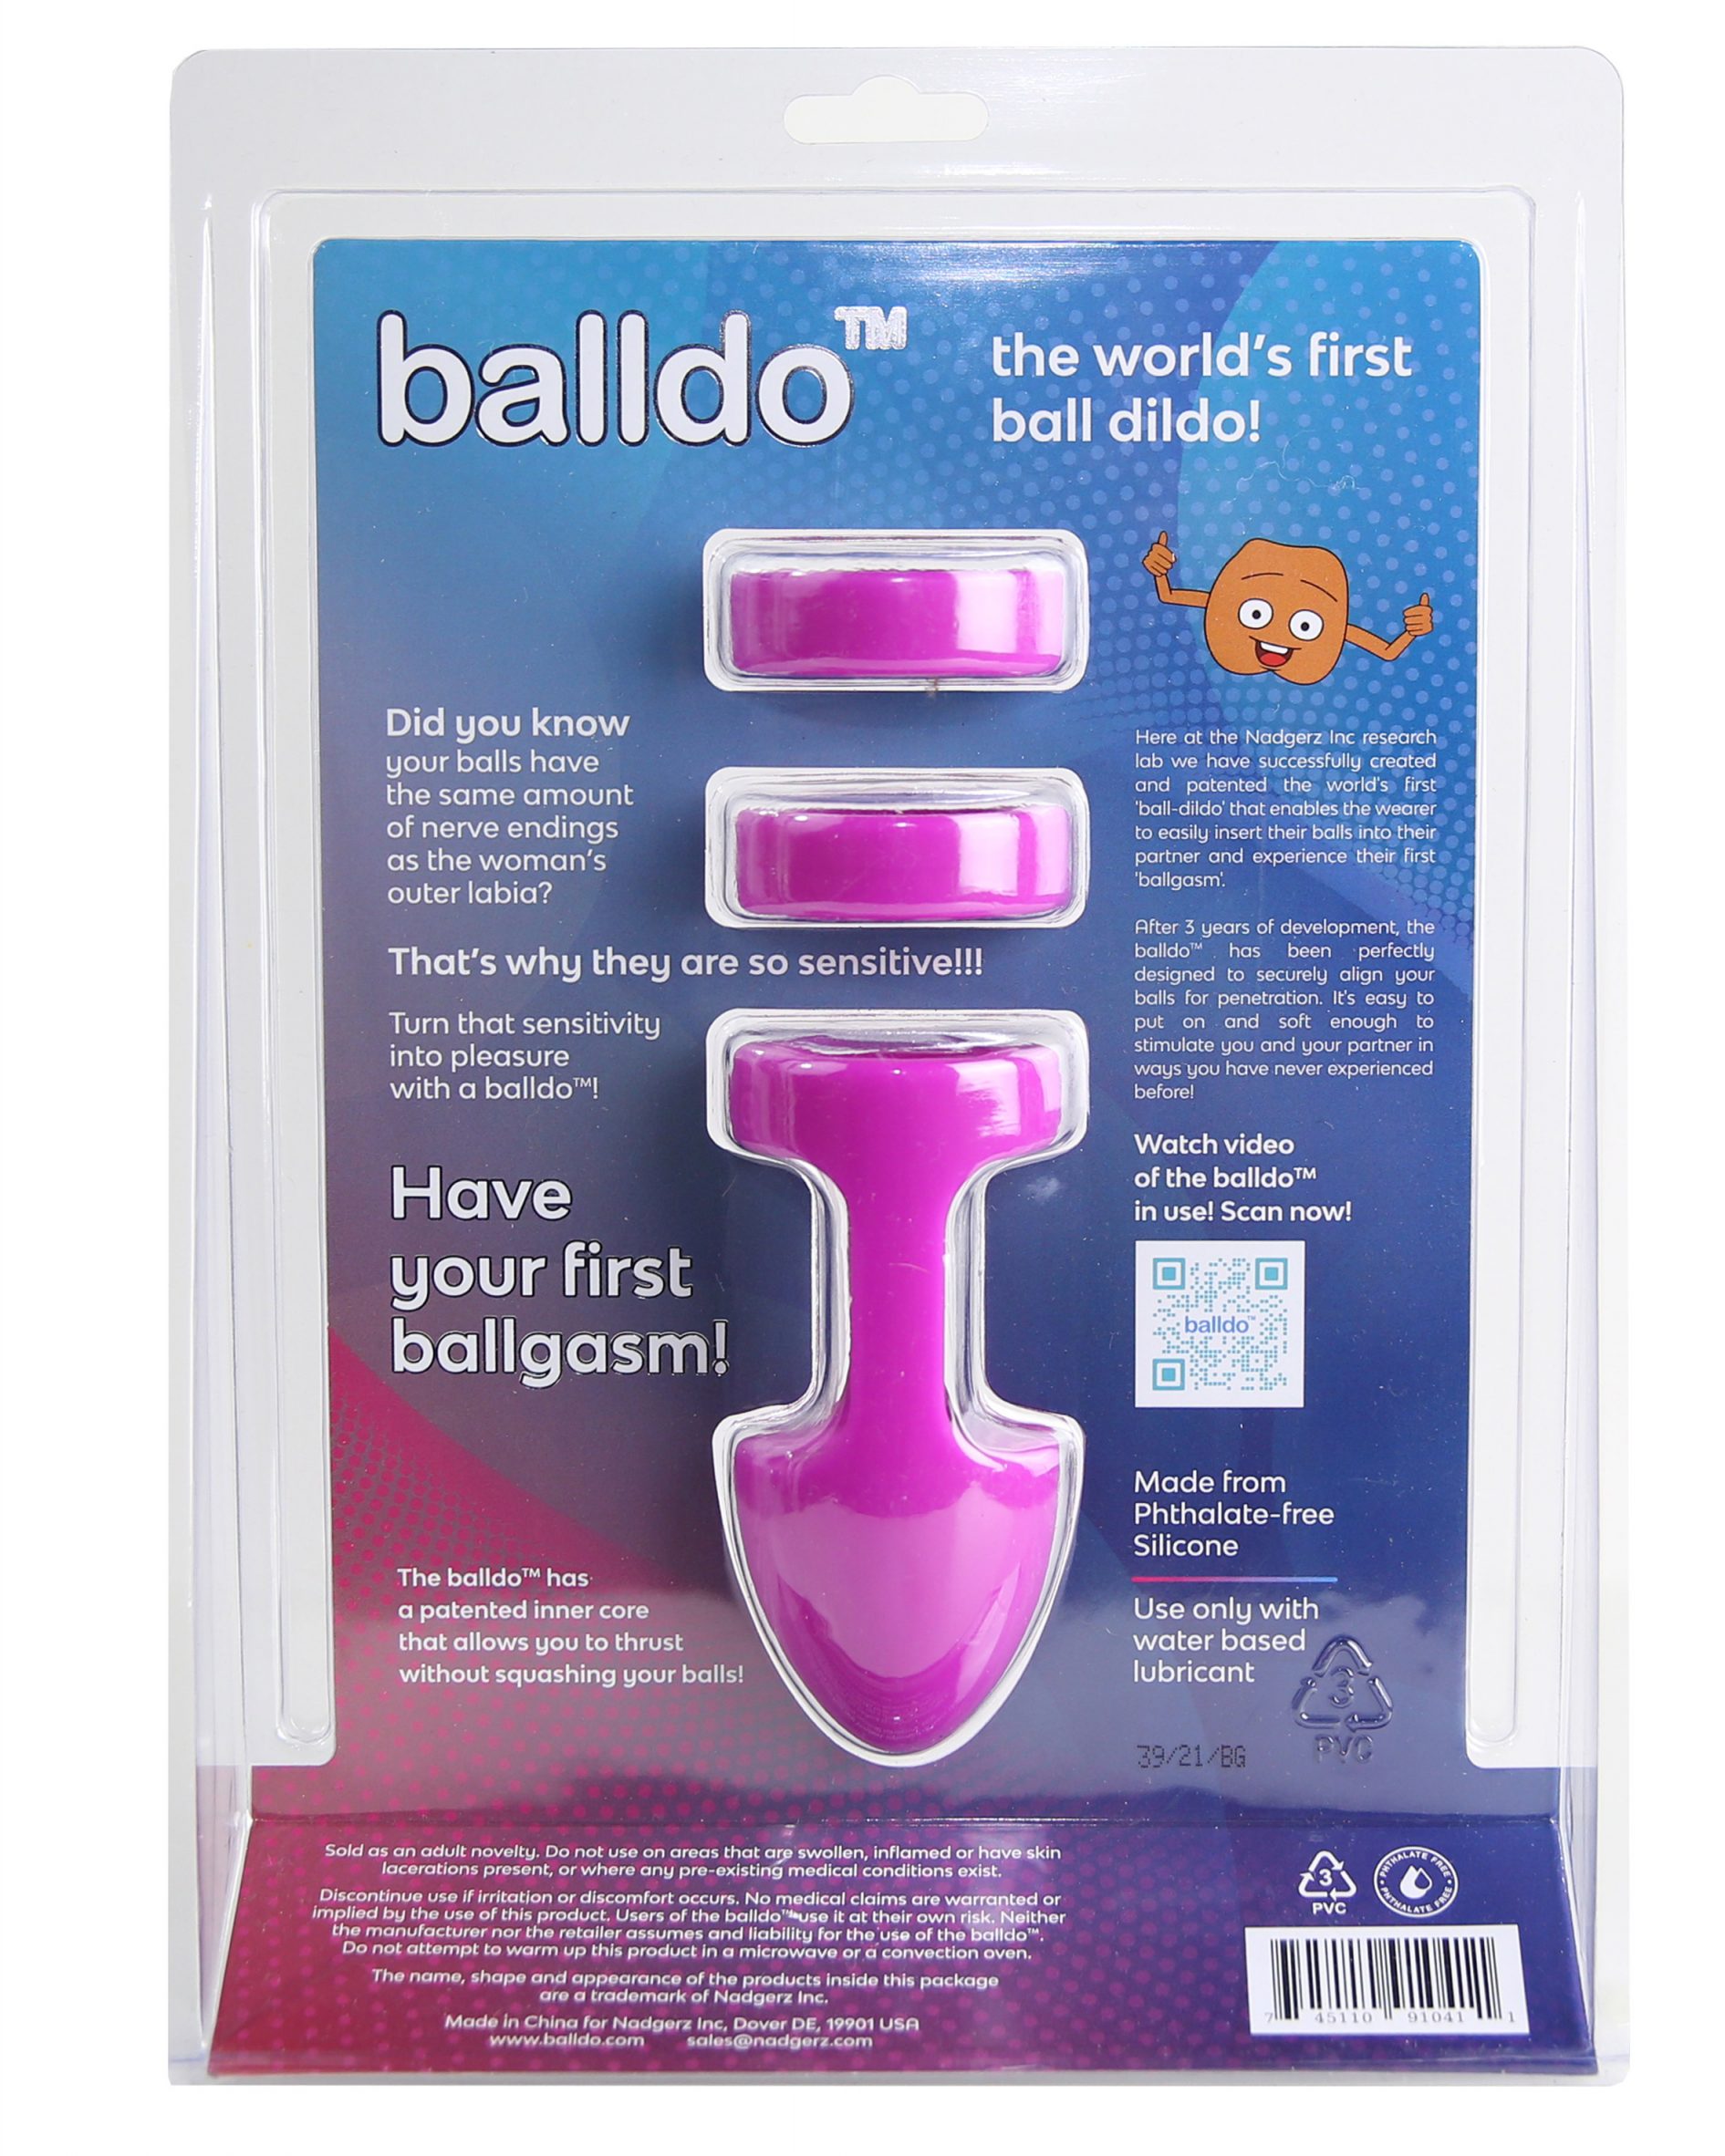 Balldo sex toy turns testicles into a dildo image